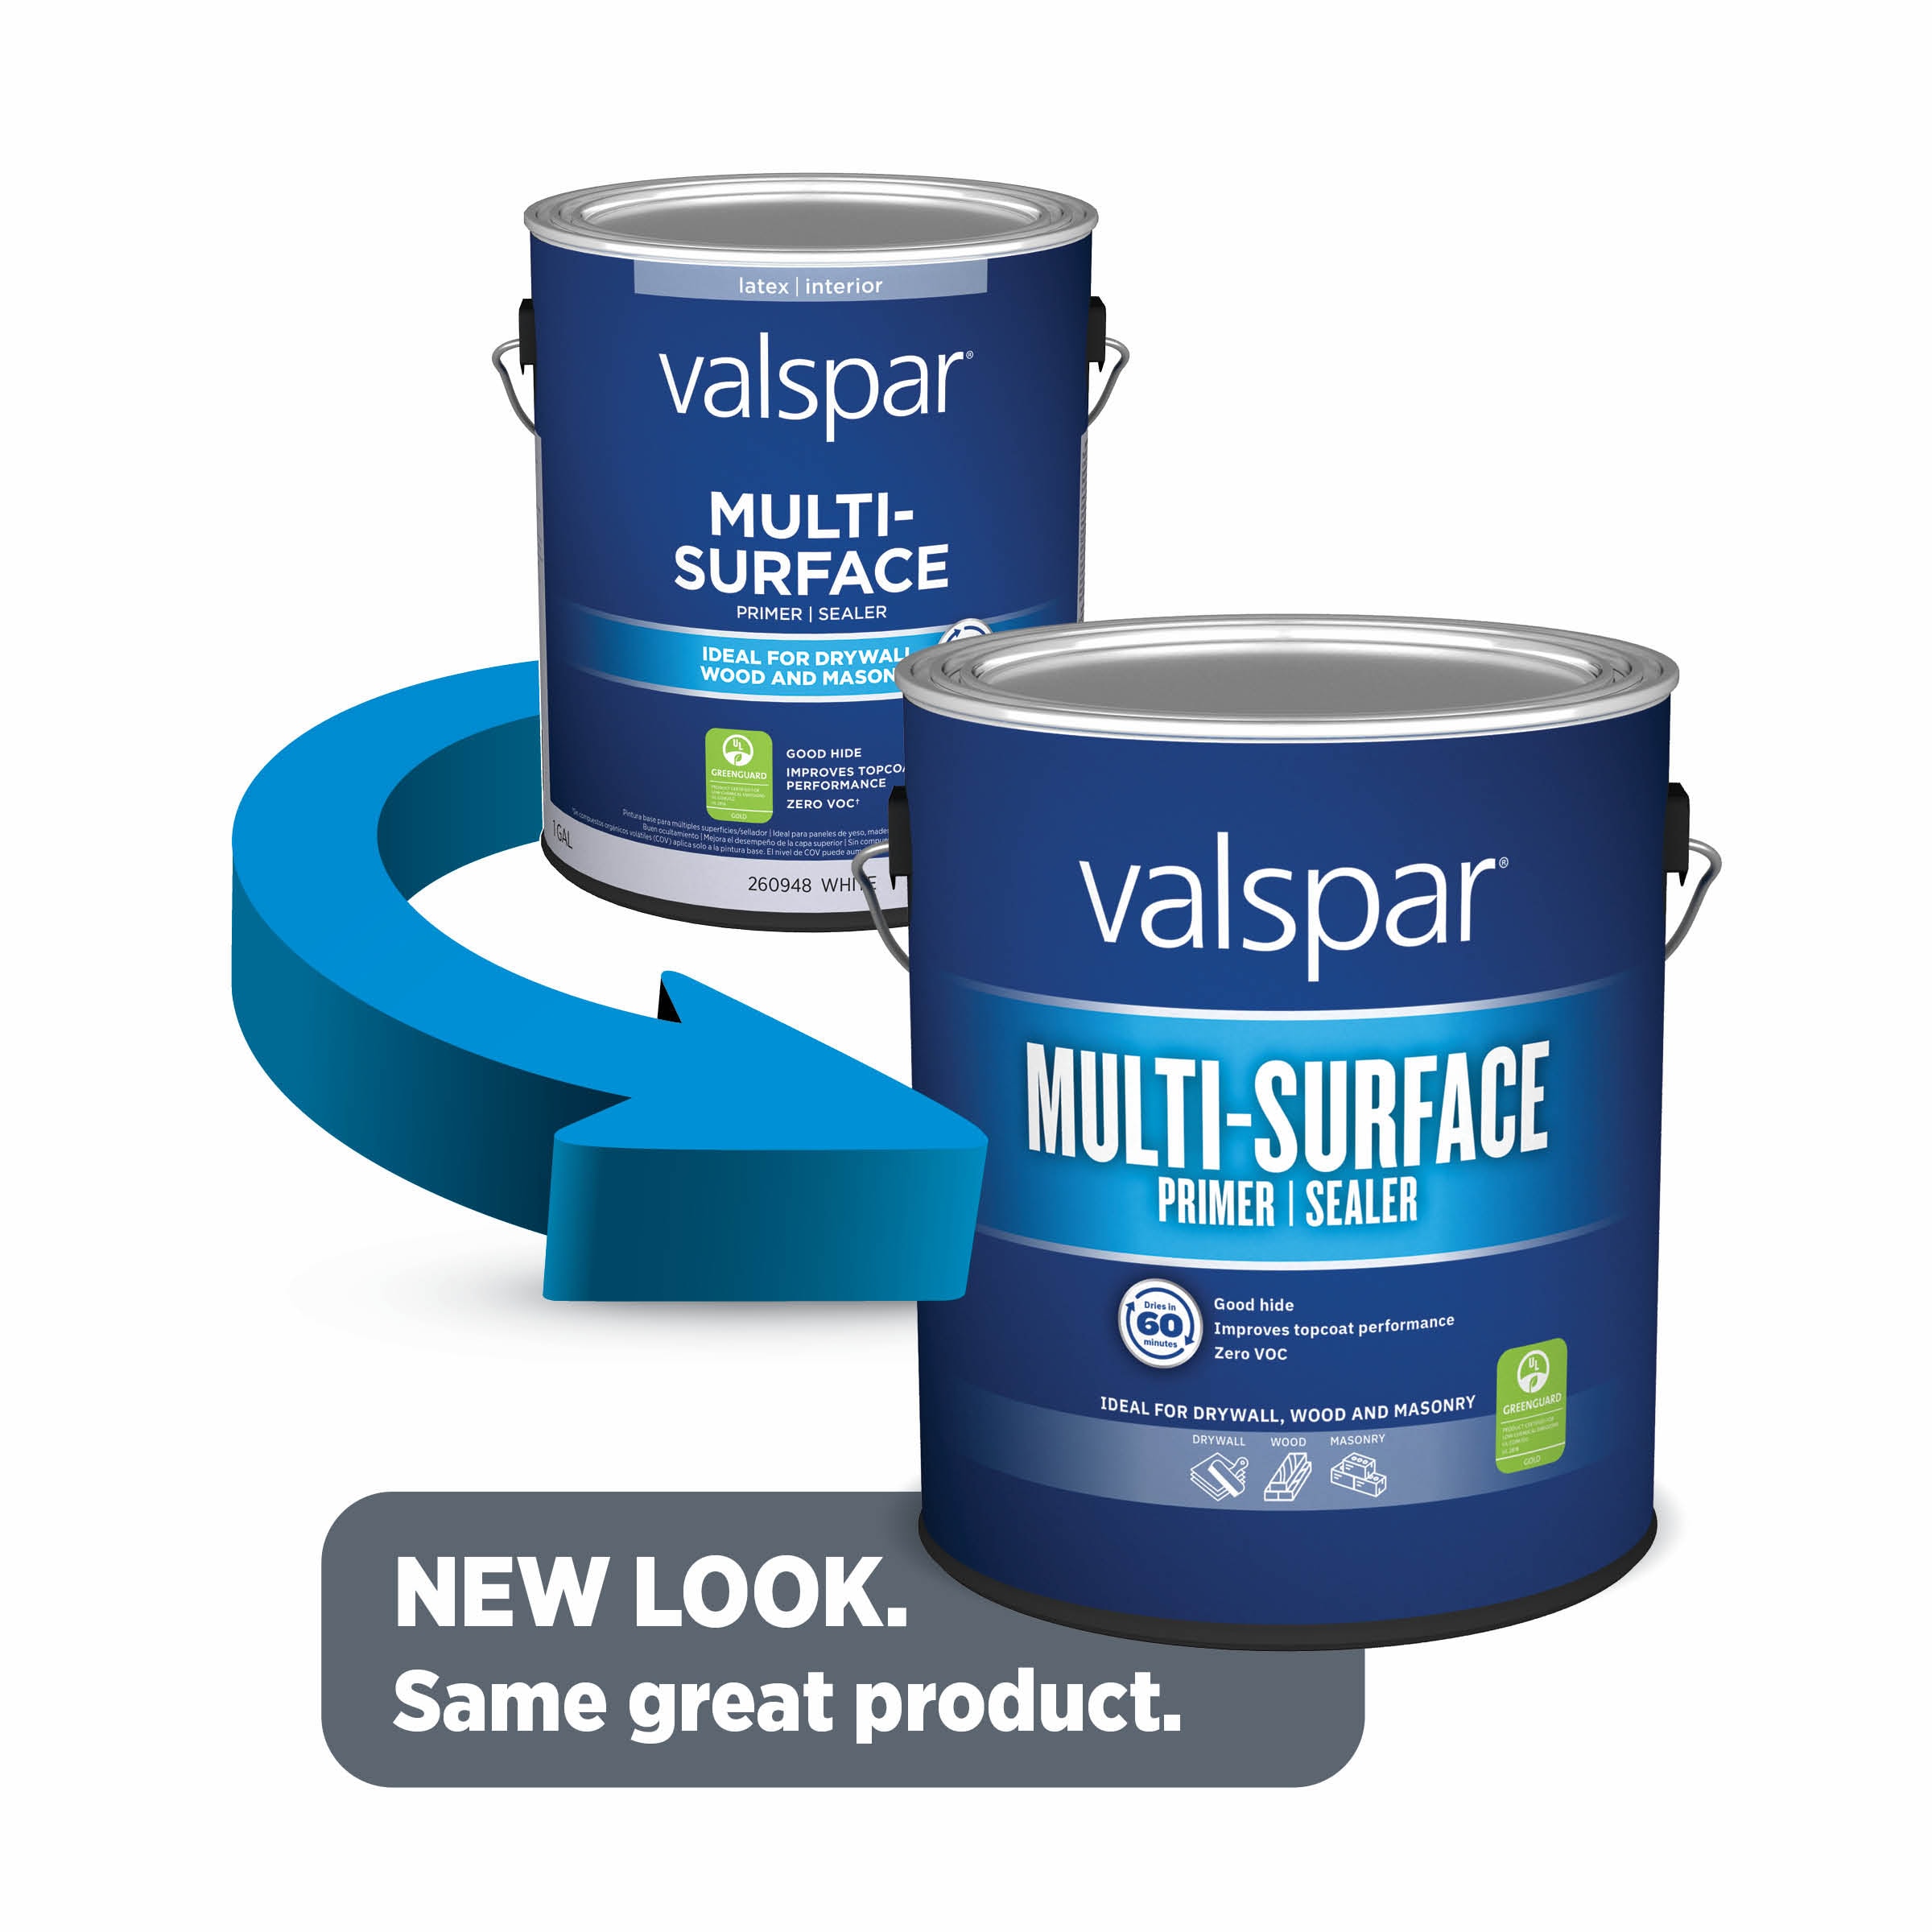 500 Pack of 14 x 1 Valspar 093.0009450.000 Valspar Paint Stir Stick, Painting Equipment & Supplies, Mud & Paint Mixers